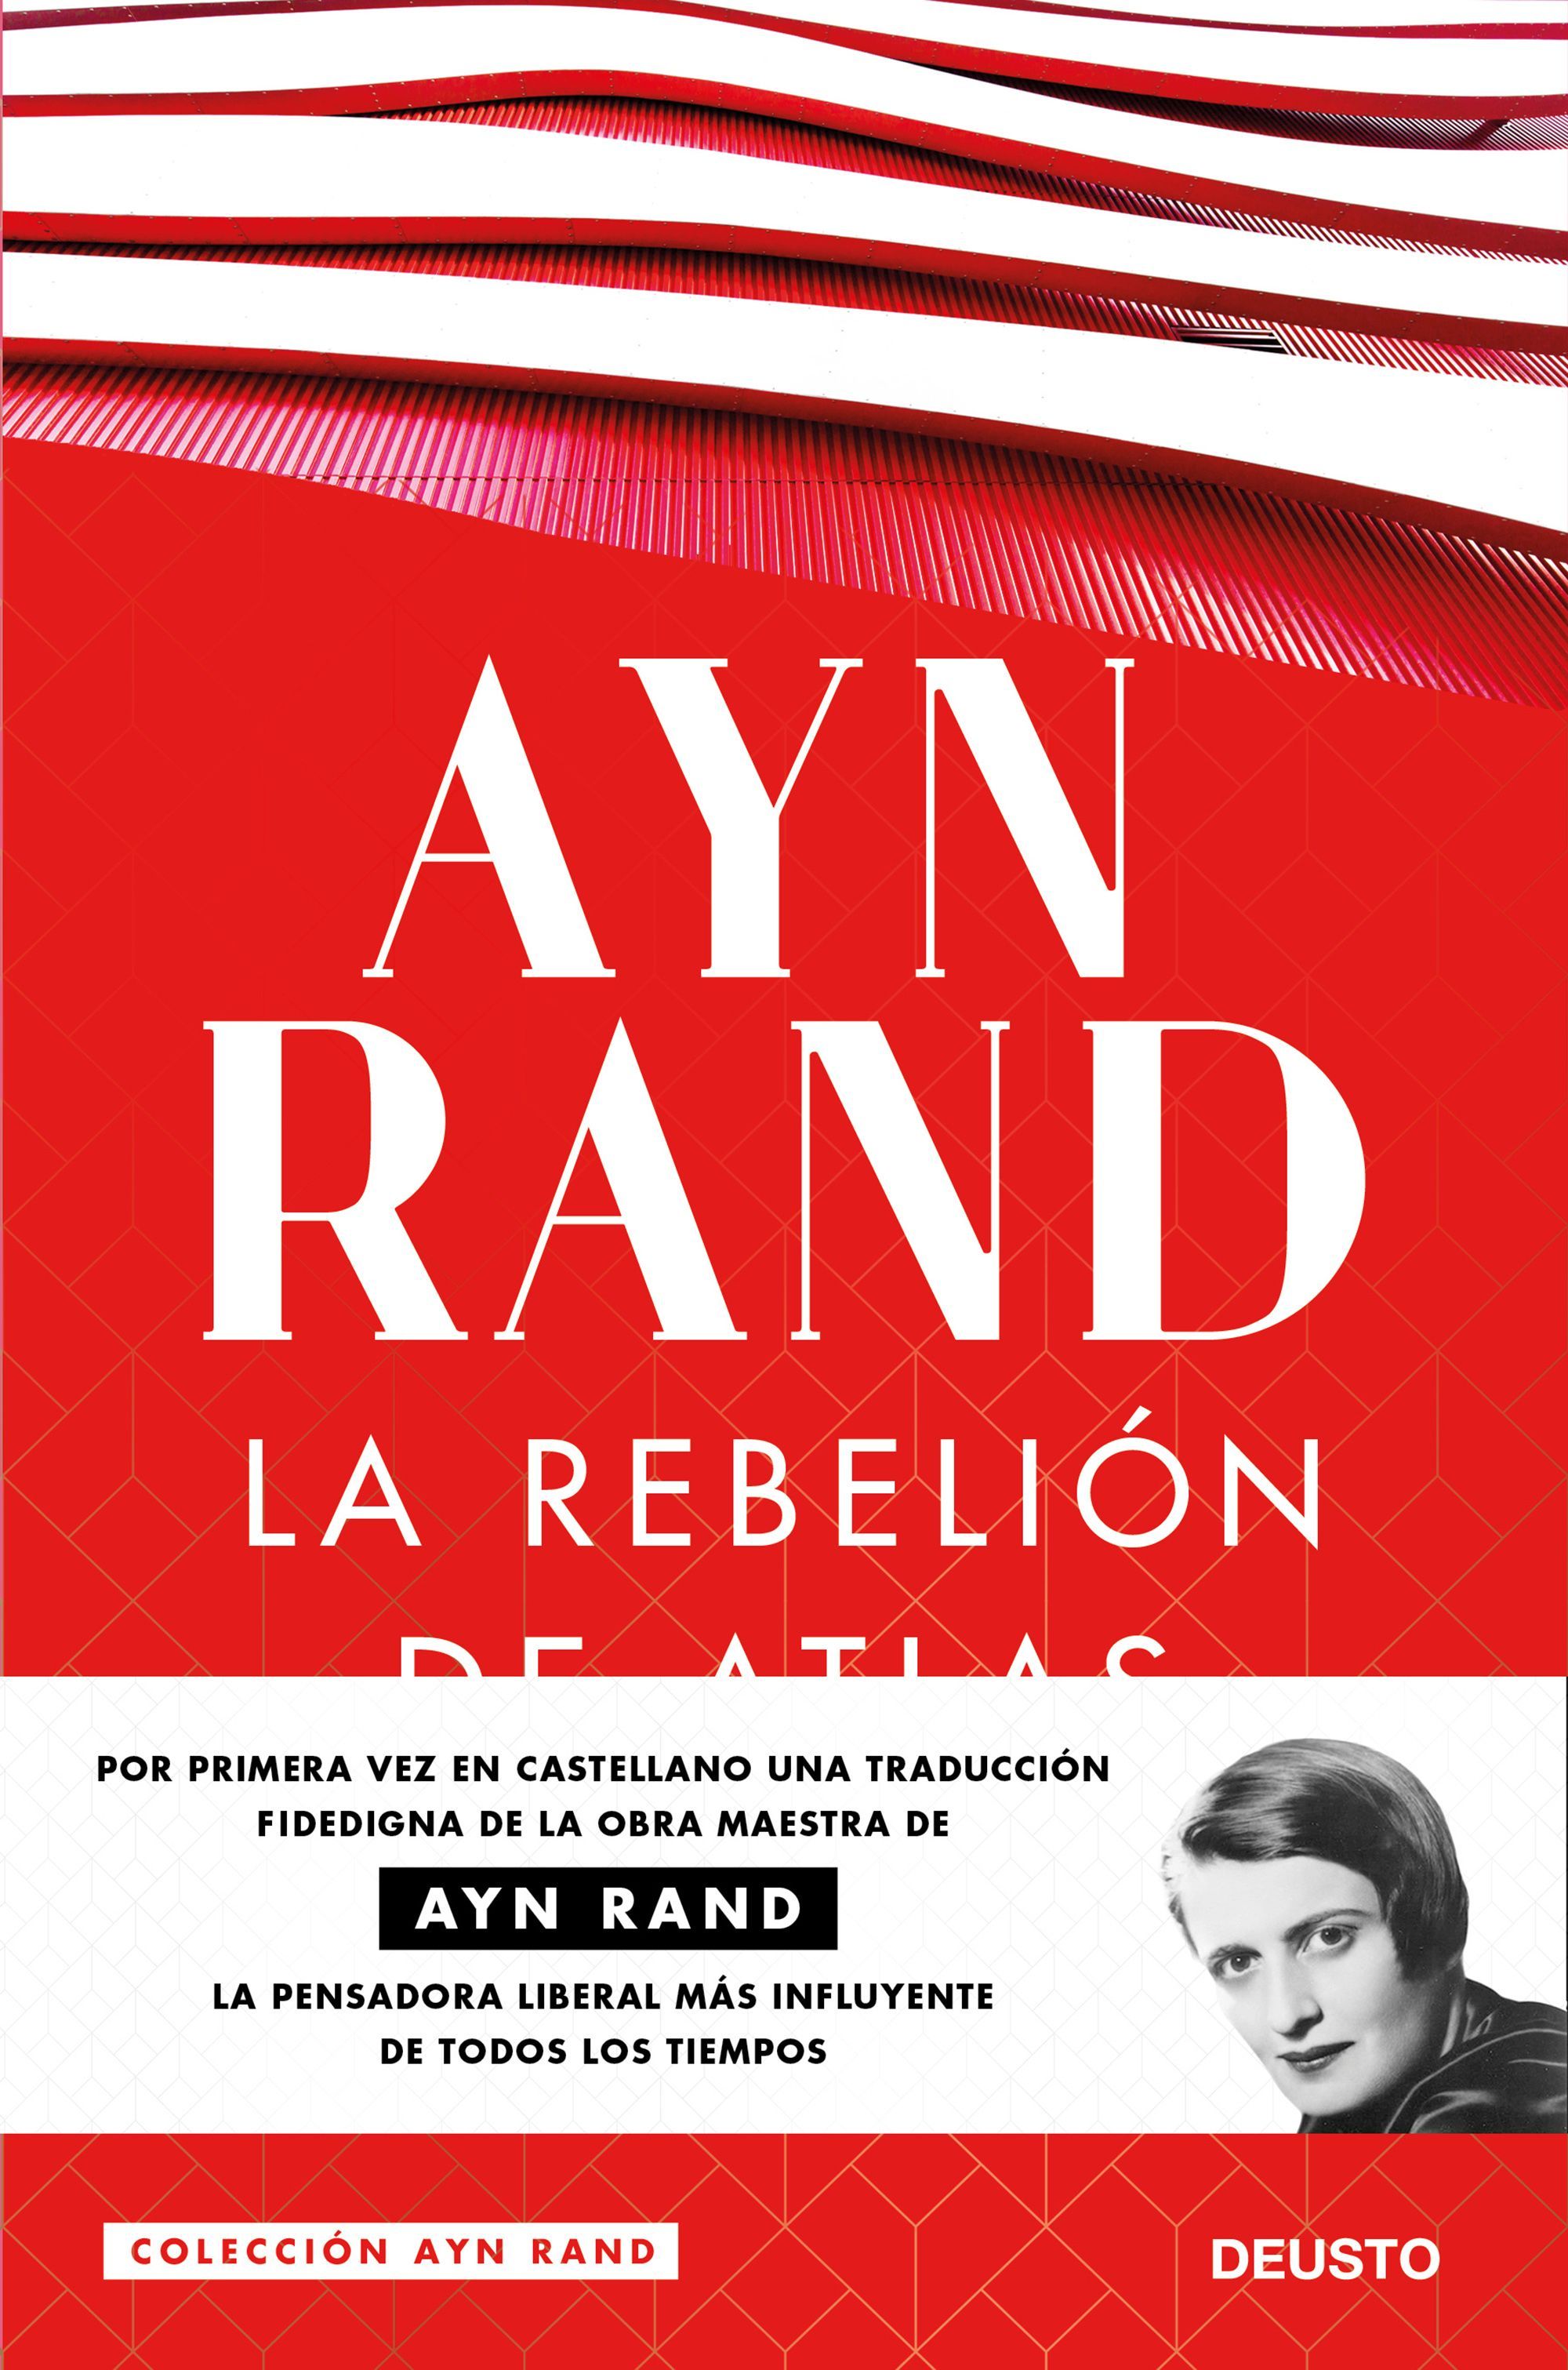 La rebelión del atlas, de la filósofa Ayn Rand, en una nueva traducción fidedigna